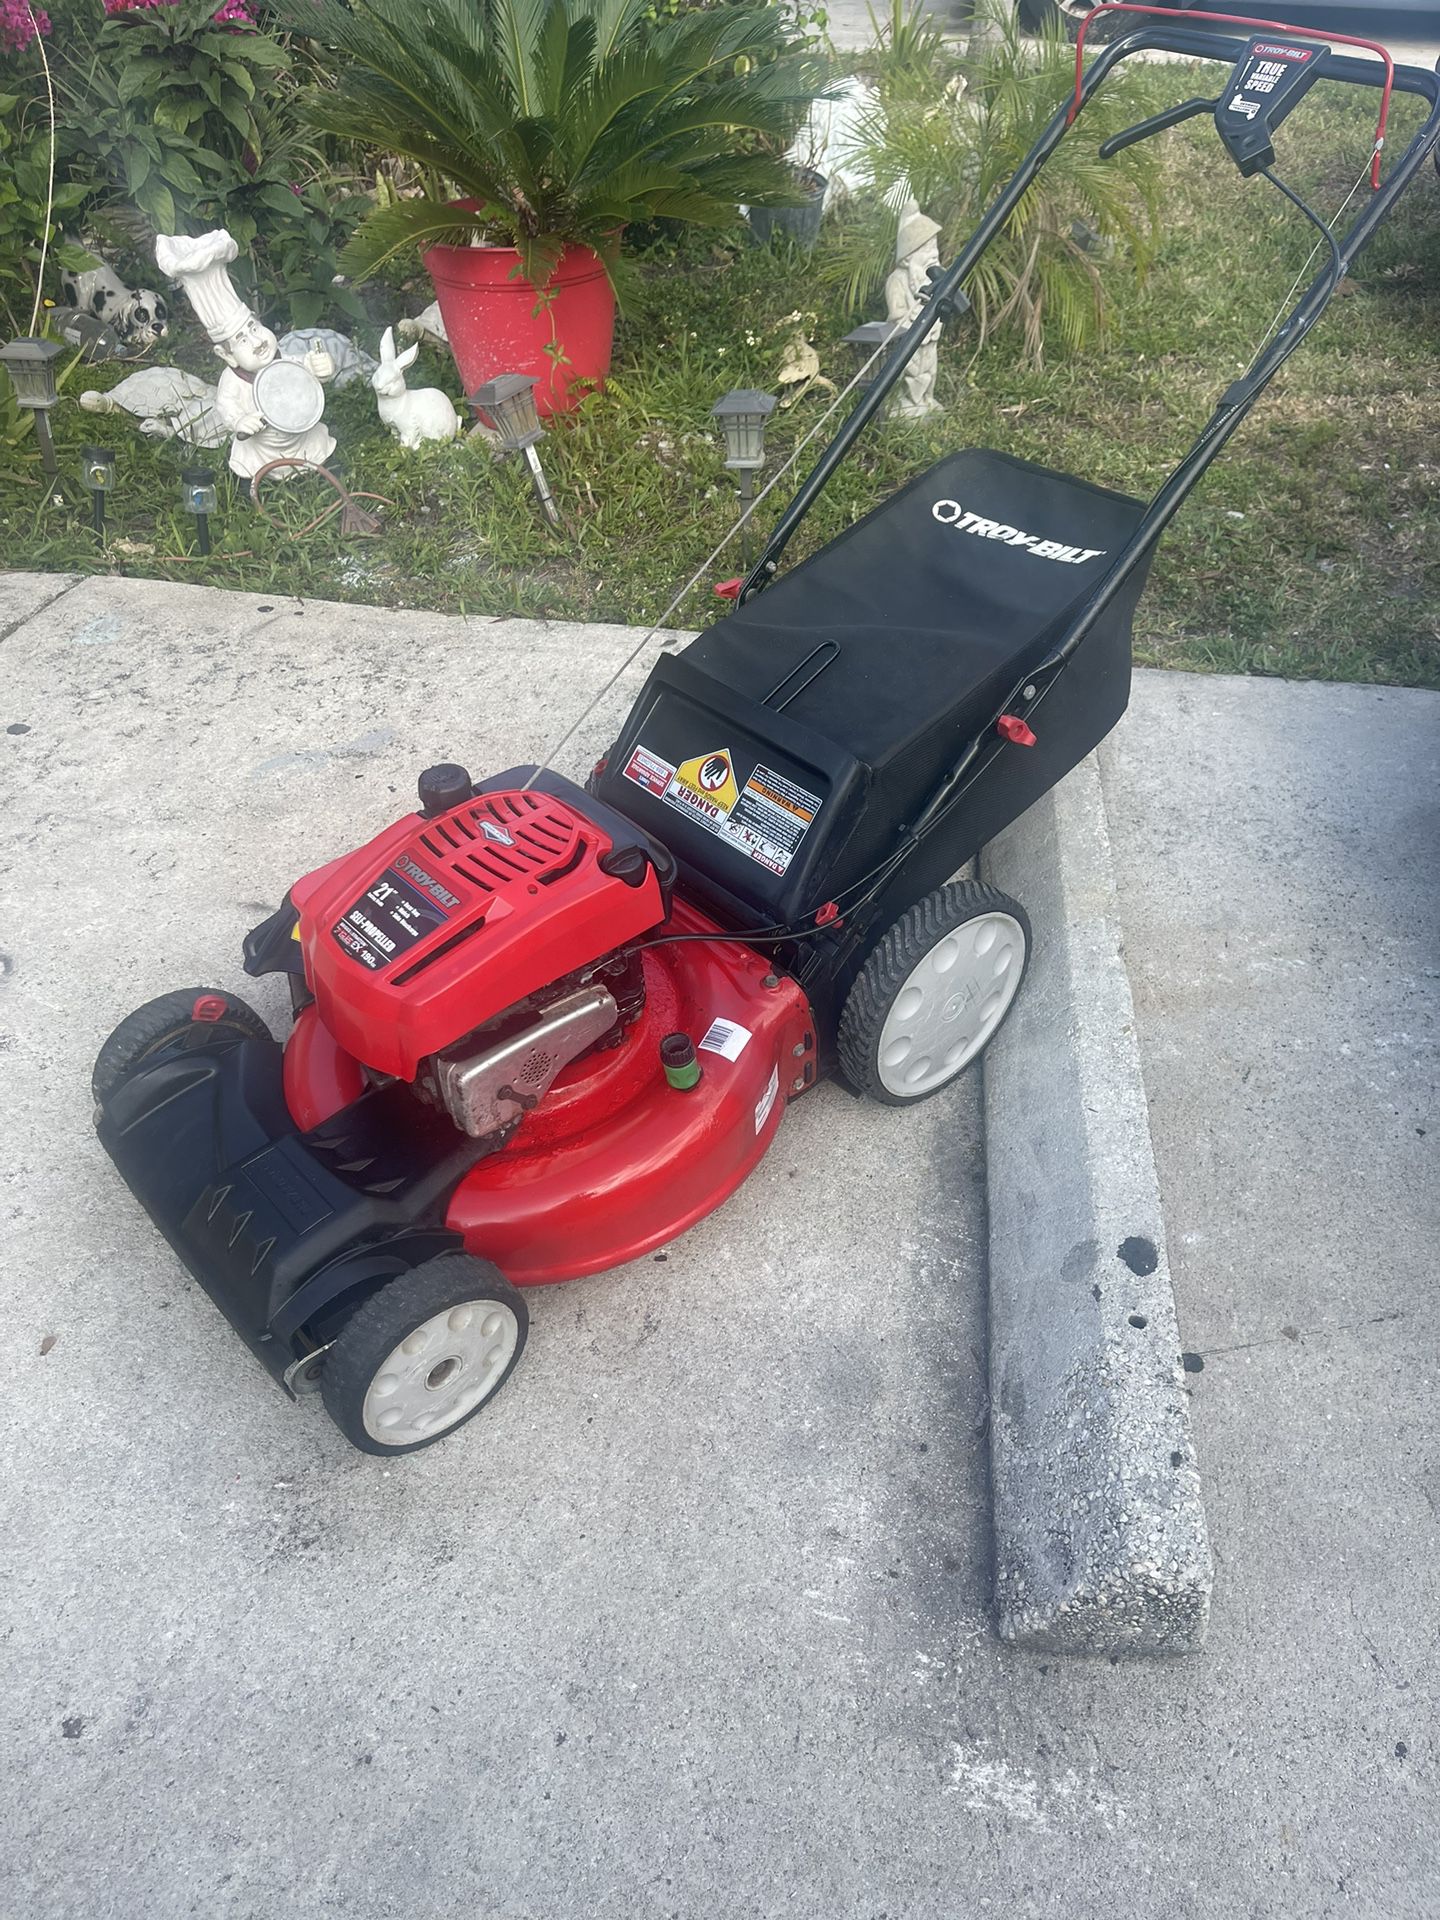 Troy-Bilt 21" Self-Propelled Lawn Mower